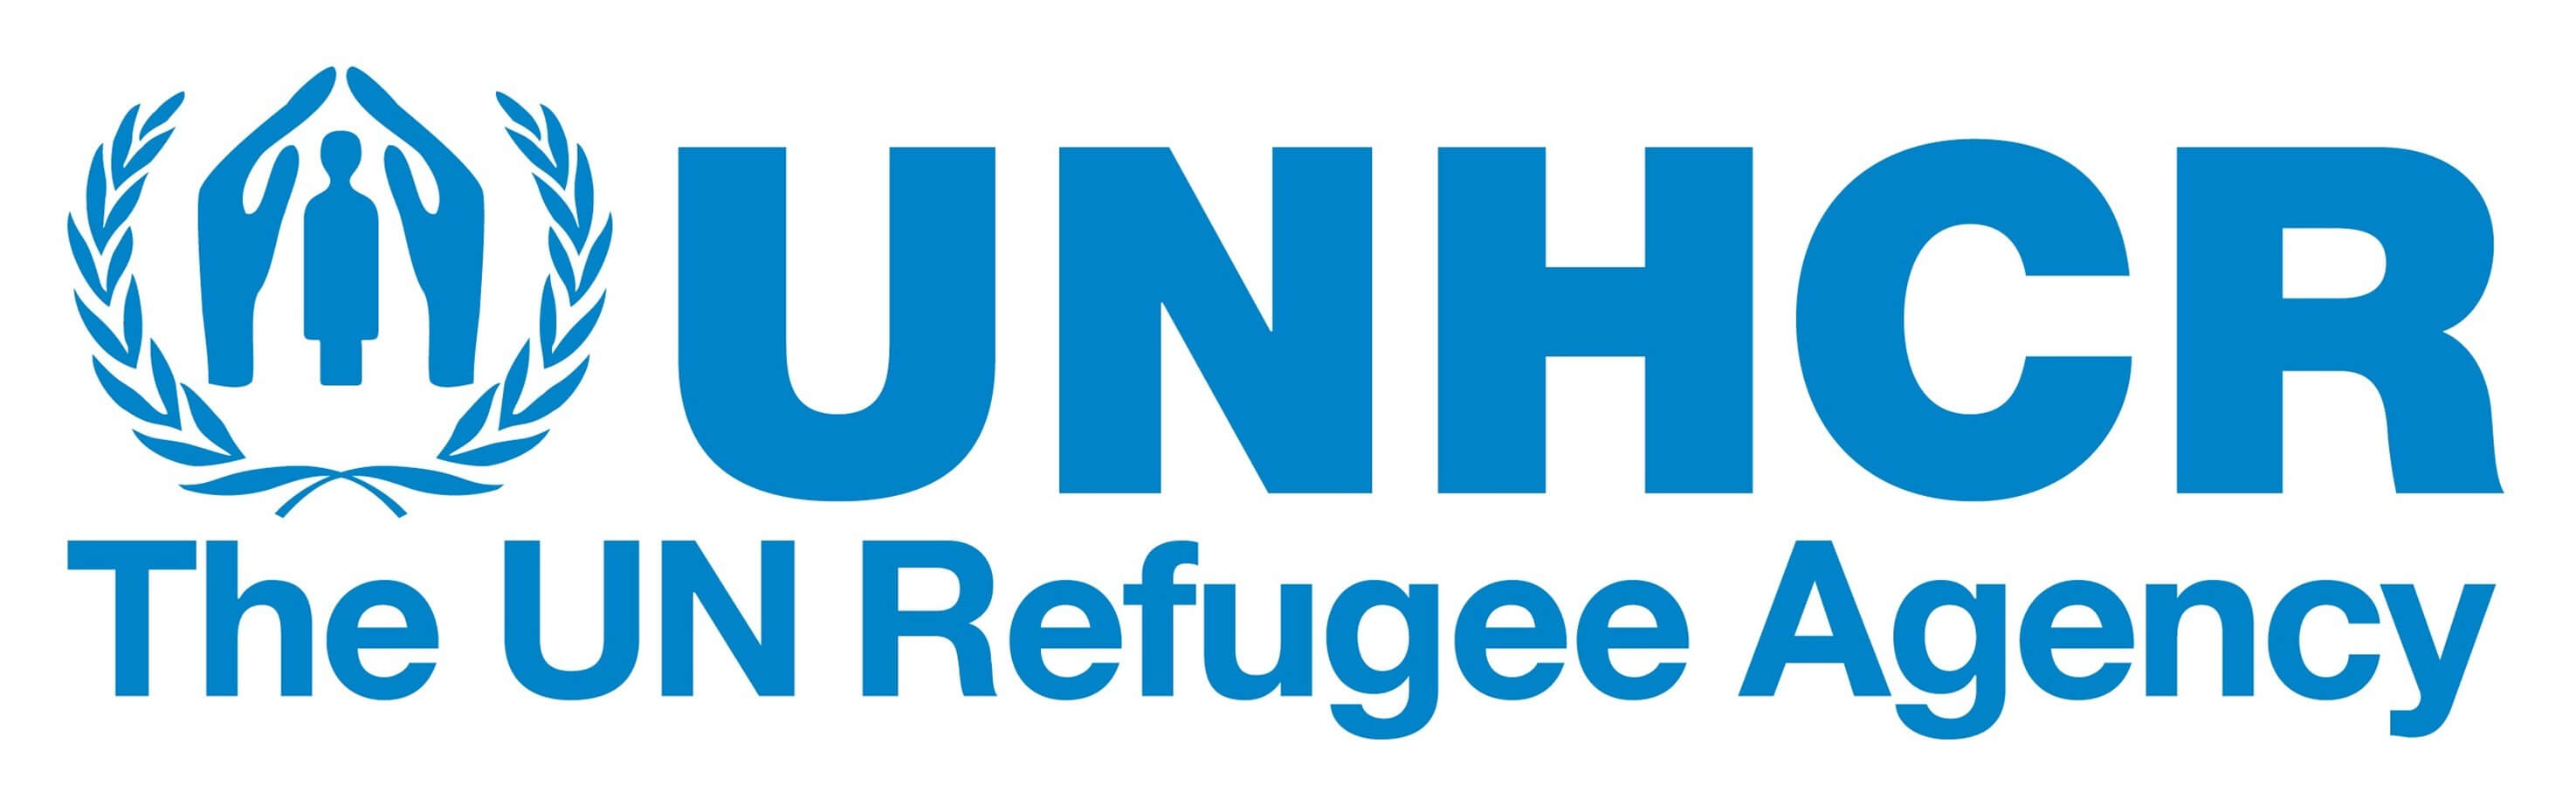 The UN Refugee Agency UNHCR